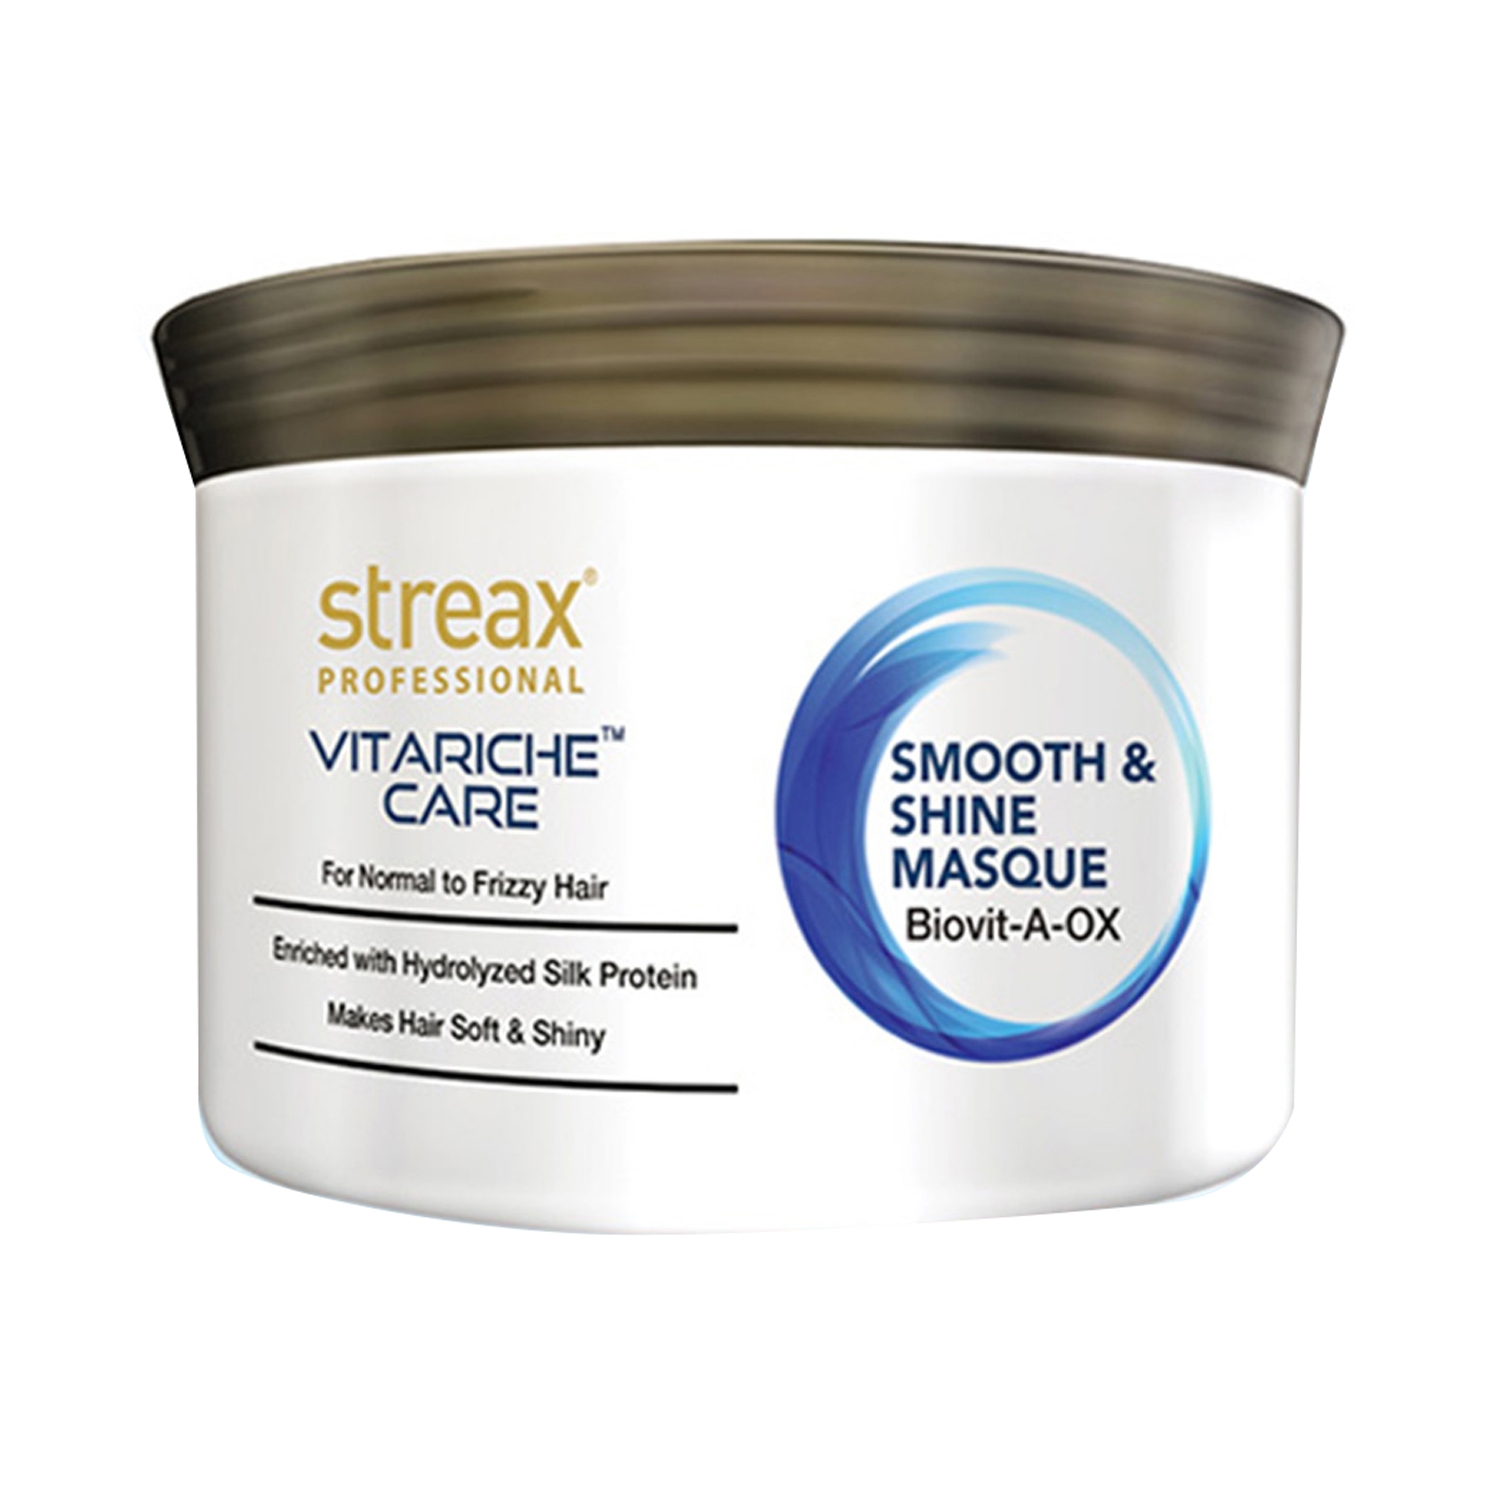 Streax Professional | Streax Professional Vitarich Care Smooth & Shine Masque (500g)